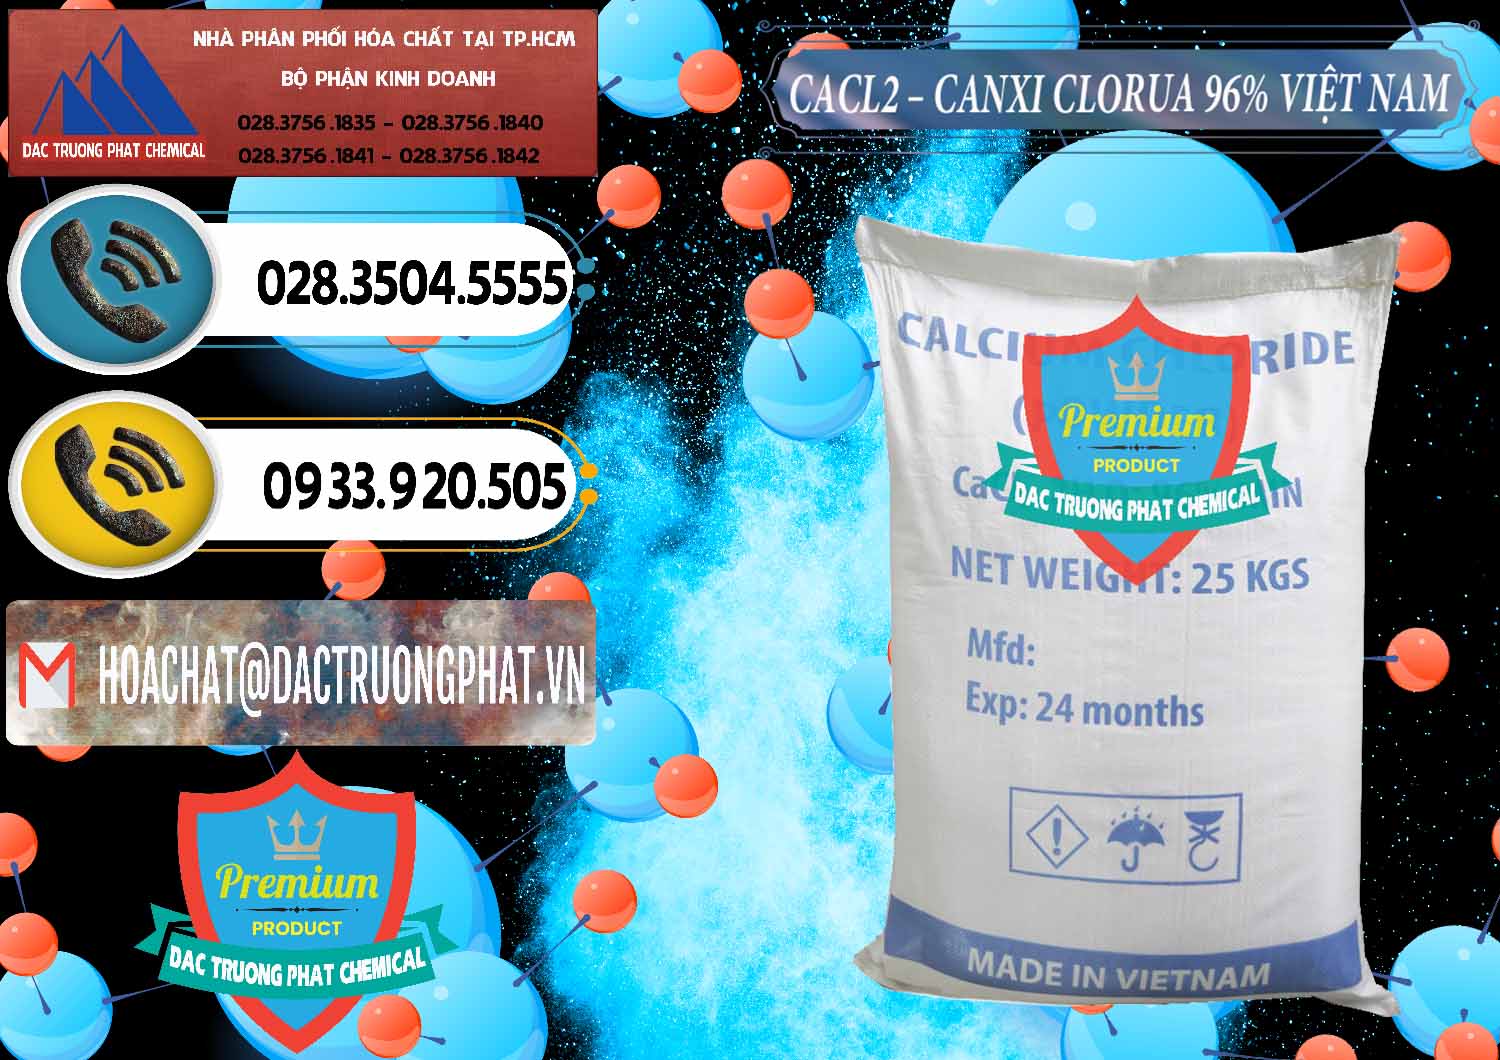 Nơi bán ( phân phối ) CaCl2 – Canxi Clorua 96% Việt Nam - 0236 - Nhà cung cấp ( kinh doanh ) hóa chất tại TP.HCM - hoachatdetnhuom.vn